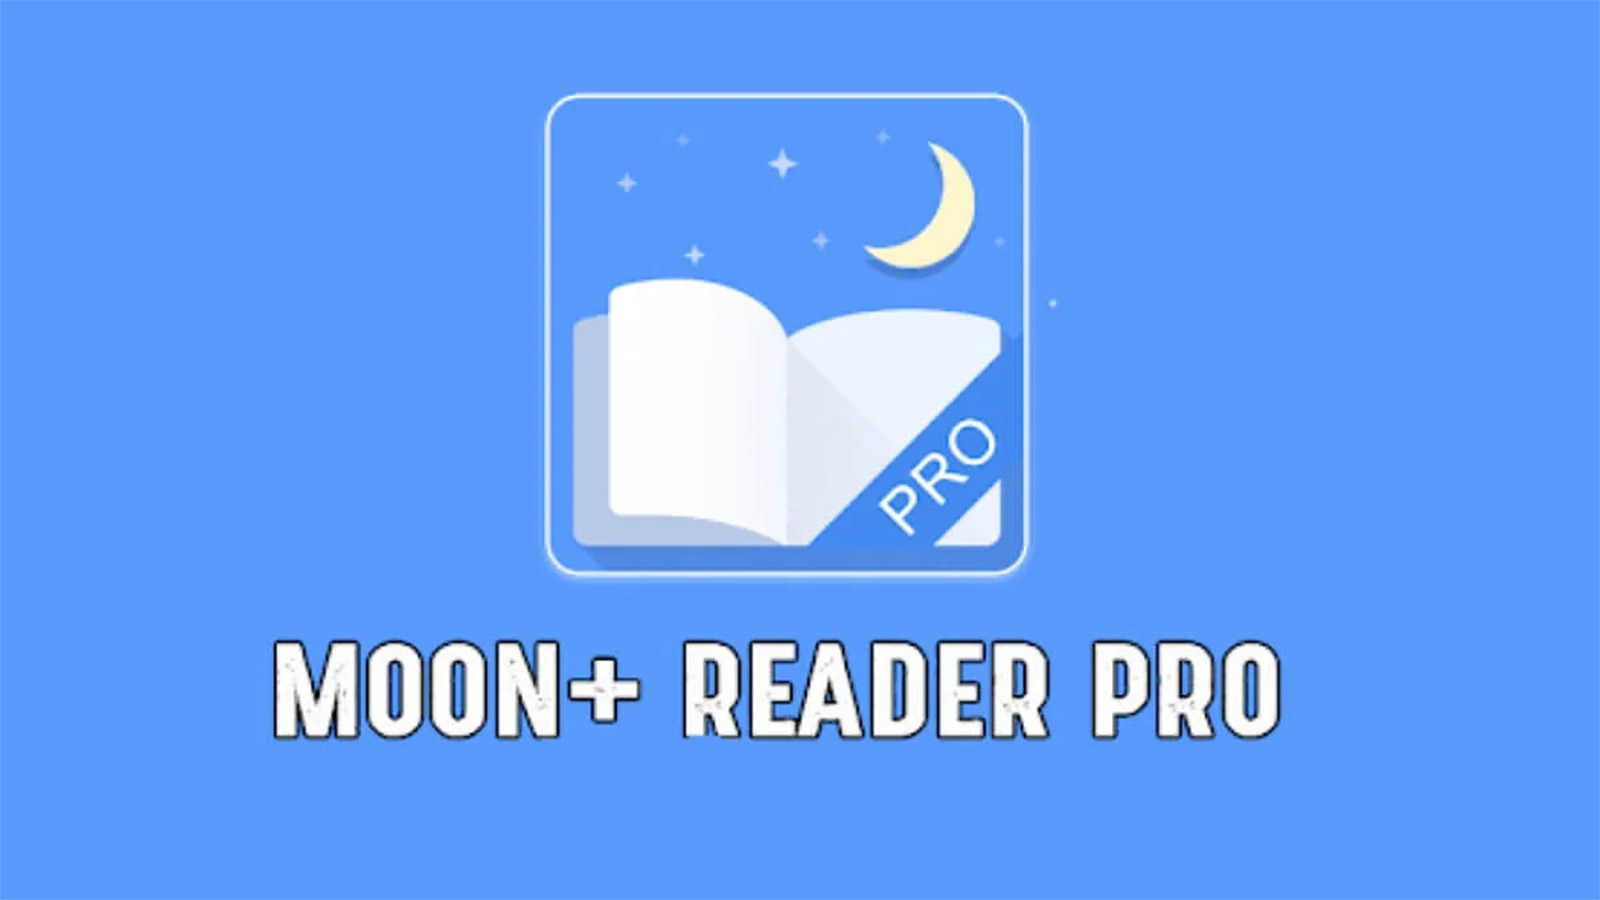 "Moon+ Reader Pro v9.0"